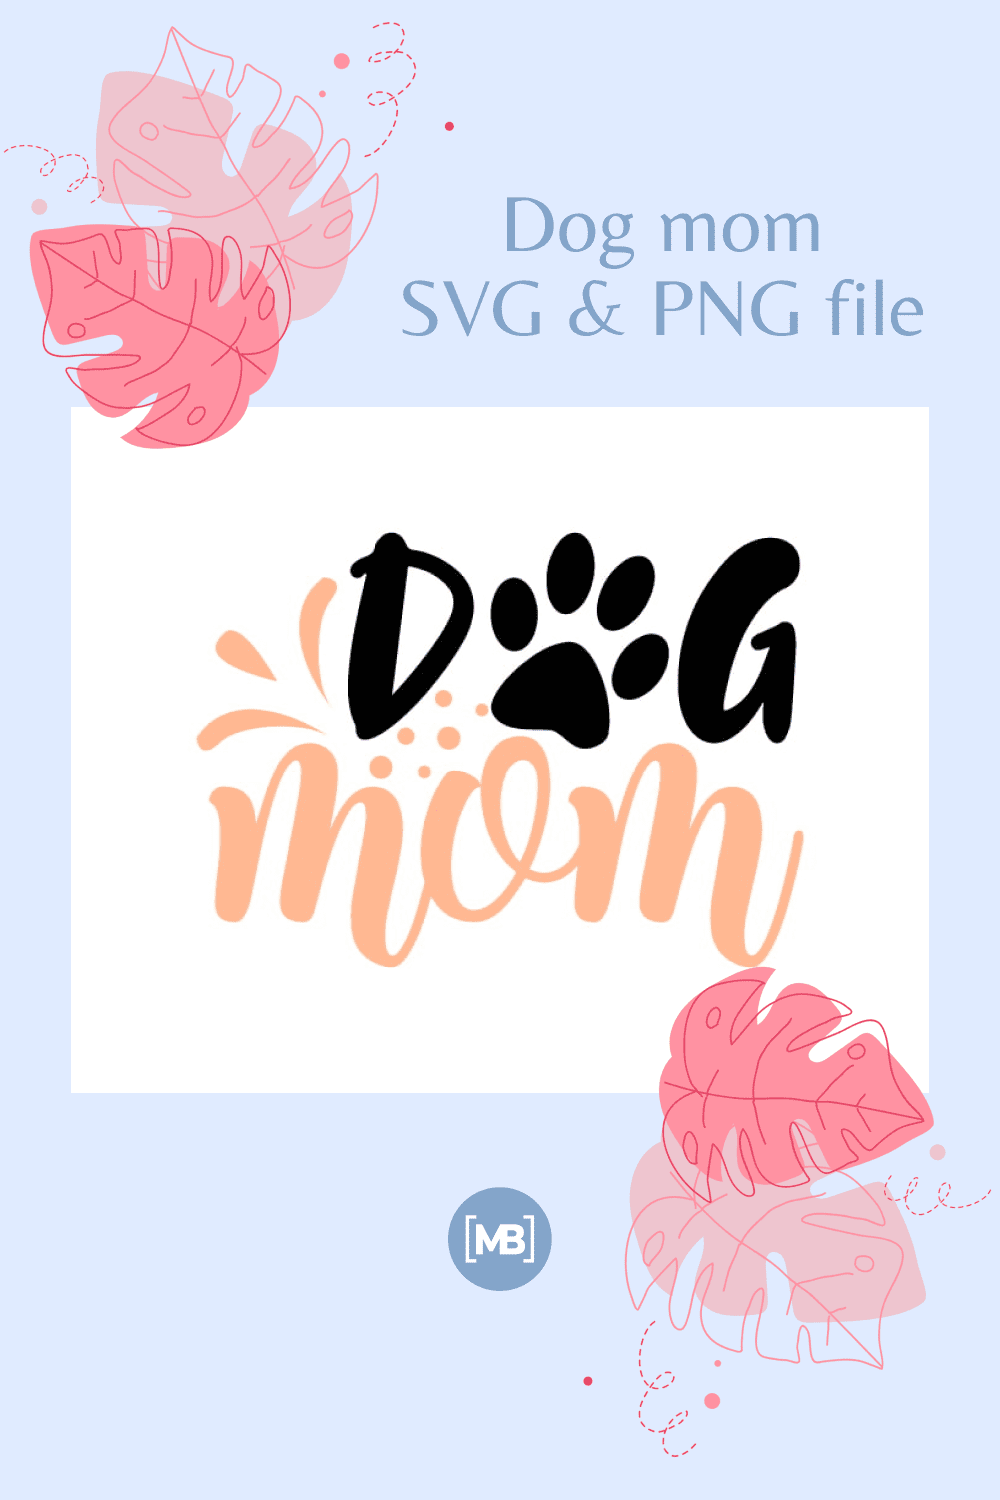 Dog mom SVG & PNG file.